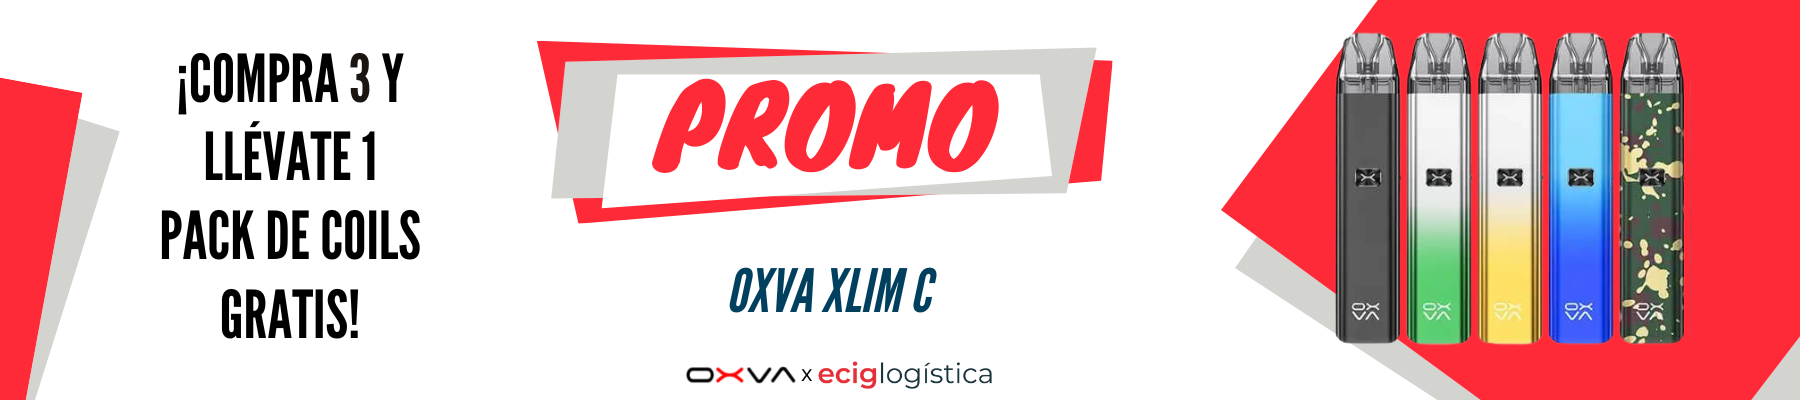 Promo Oxva Xlim C. Compra 3 y llévate un pack de coils gratis